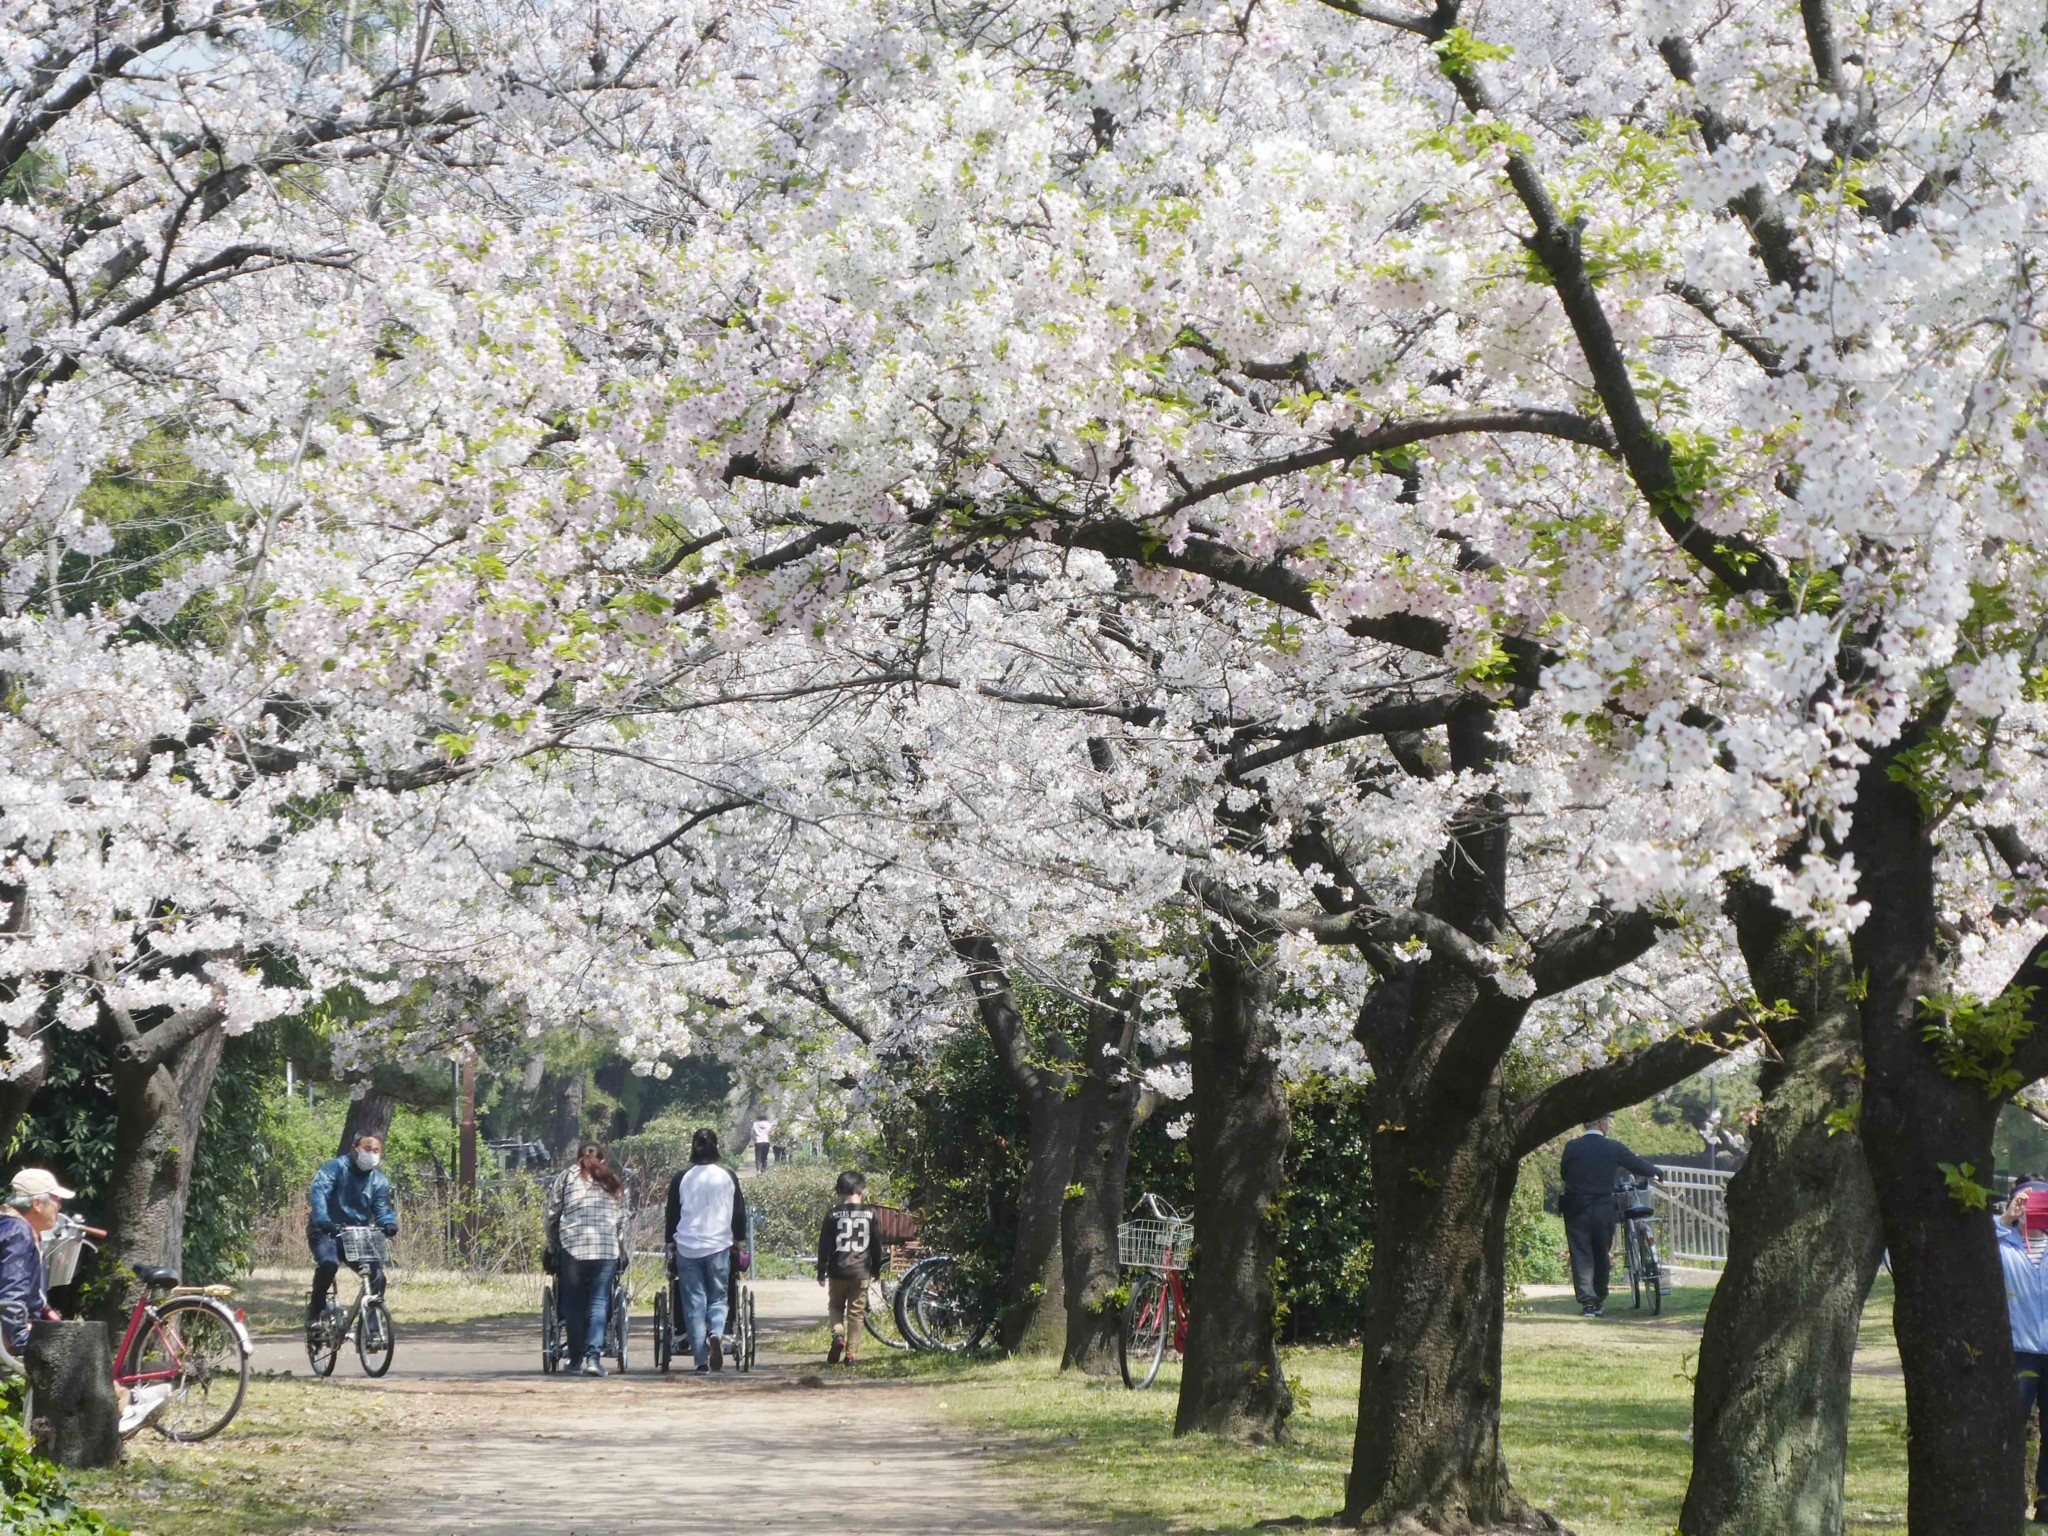 浜寺公園は花見の名所としても有名な公園で、3月～4月のお花見シーズンになると多くの花見客や観光客で賑わいます。<br />
そんなお花見シーズンには綺麗な桜の木の下でBBQを楽しむことができます。お花見バーベキューができるのは大阪でも数が少なく人気の公園でもあります。